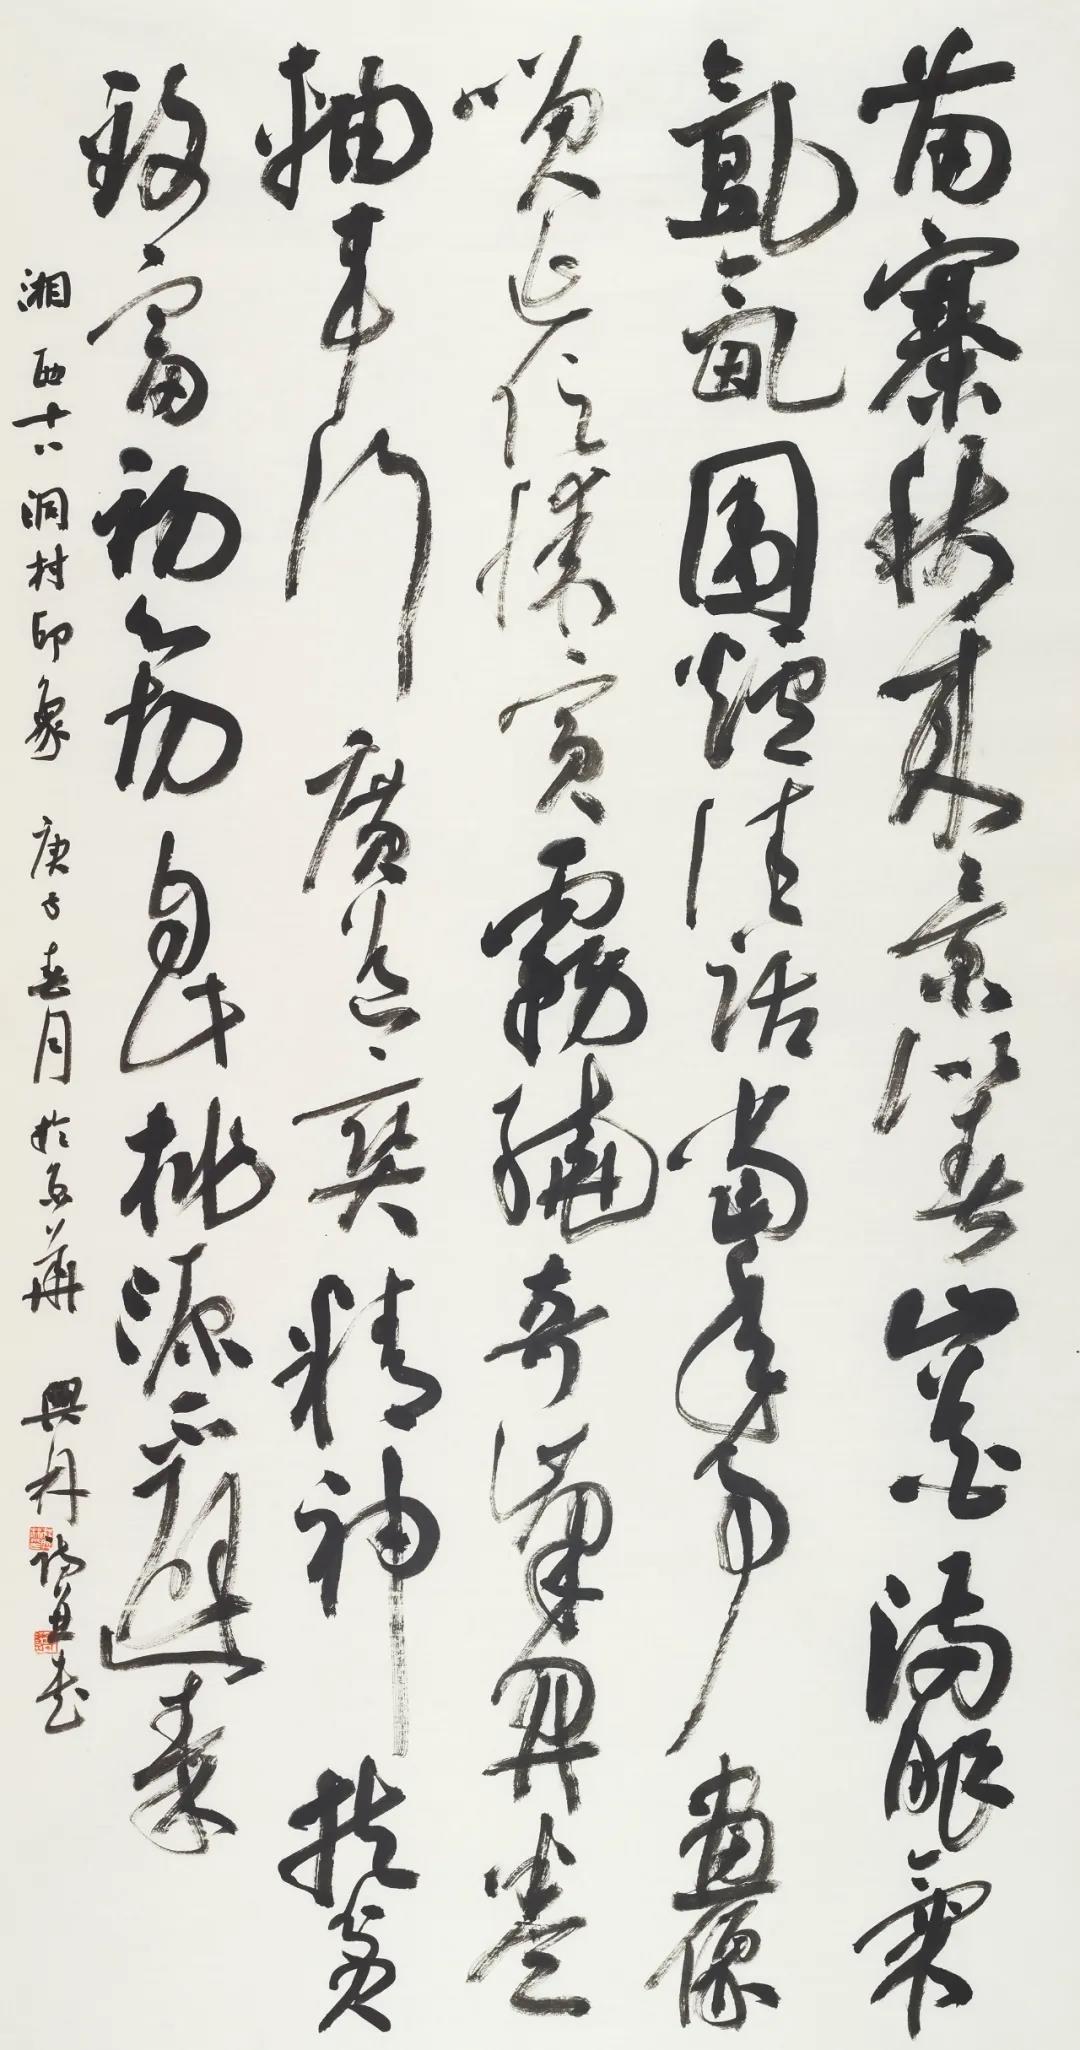 程兴林 湘西十八洞村印象 书法 180×96cm 2020 年